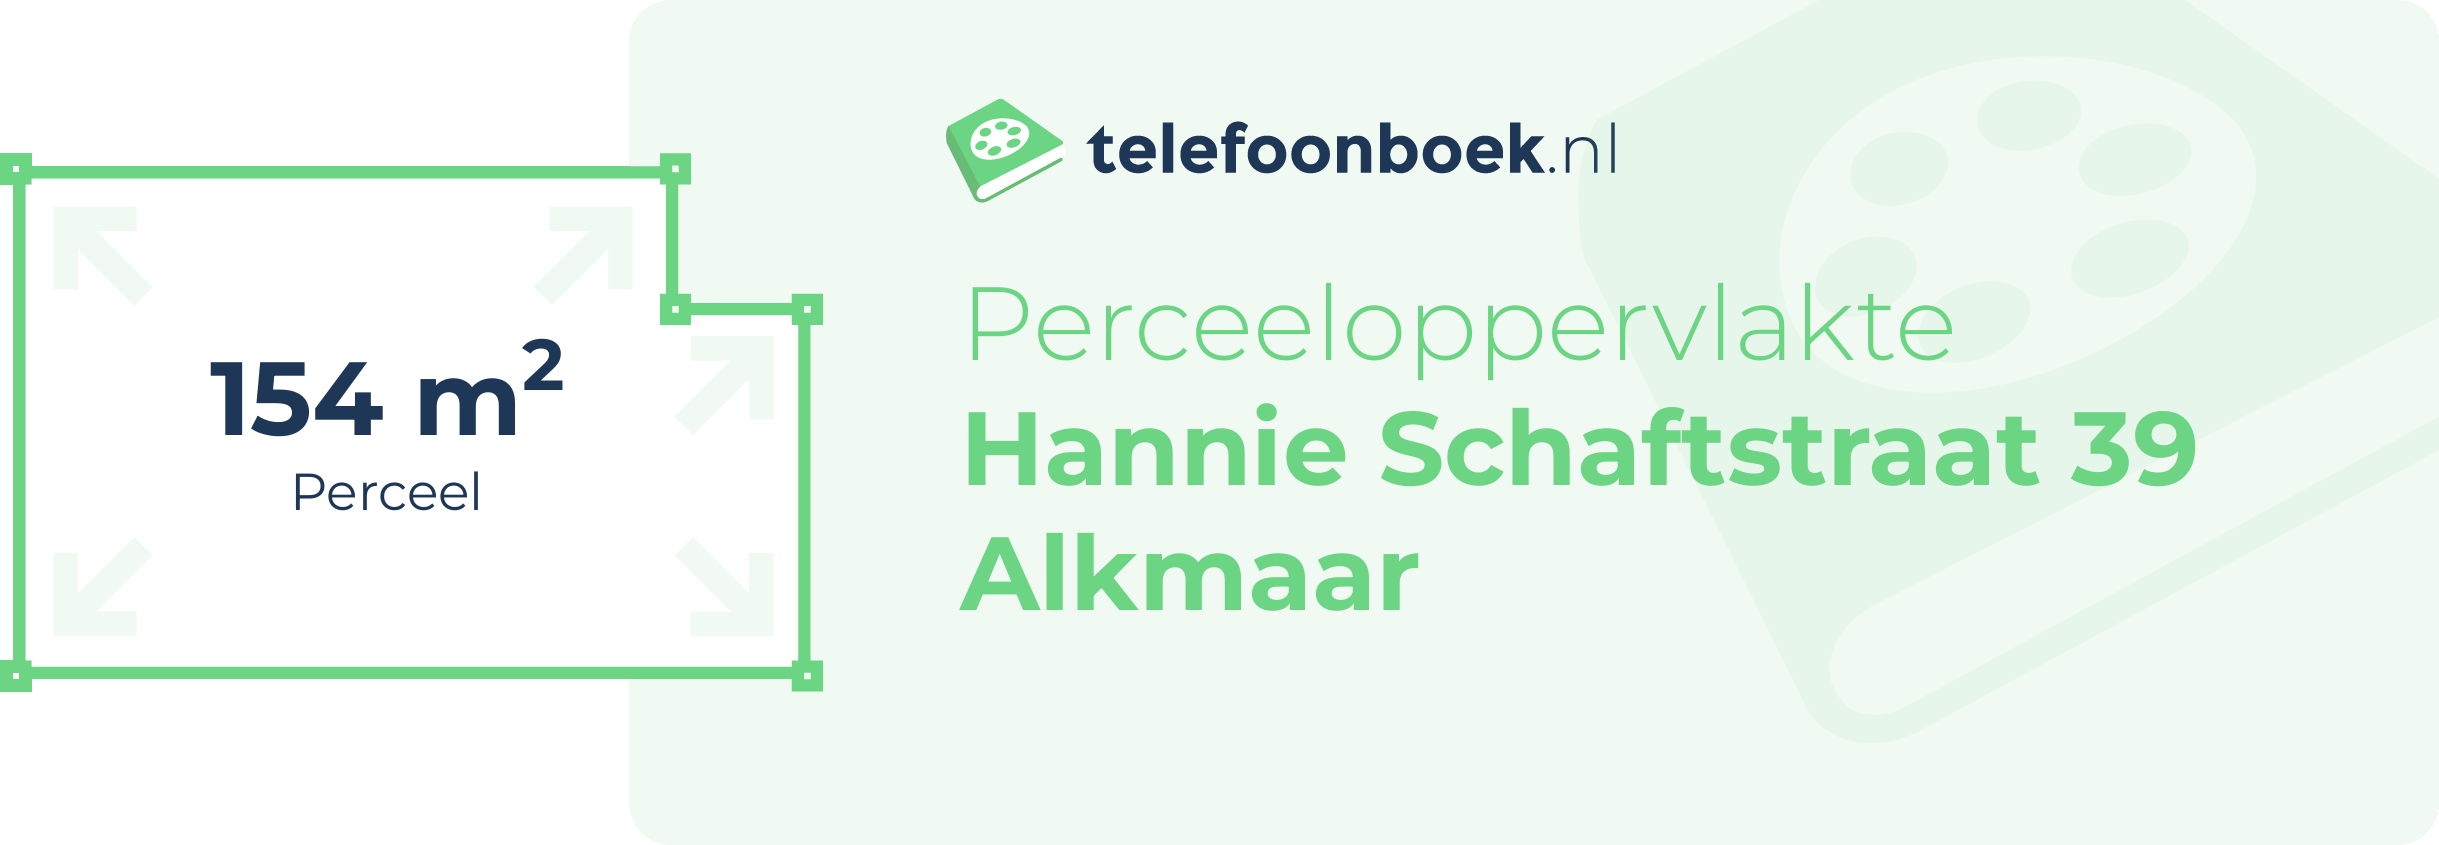 Perceeloppervlakte Hannie Schaftstraat 39 Alkmaar